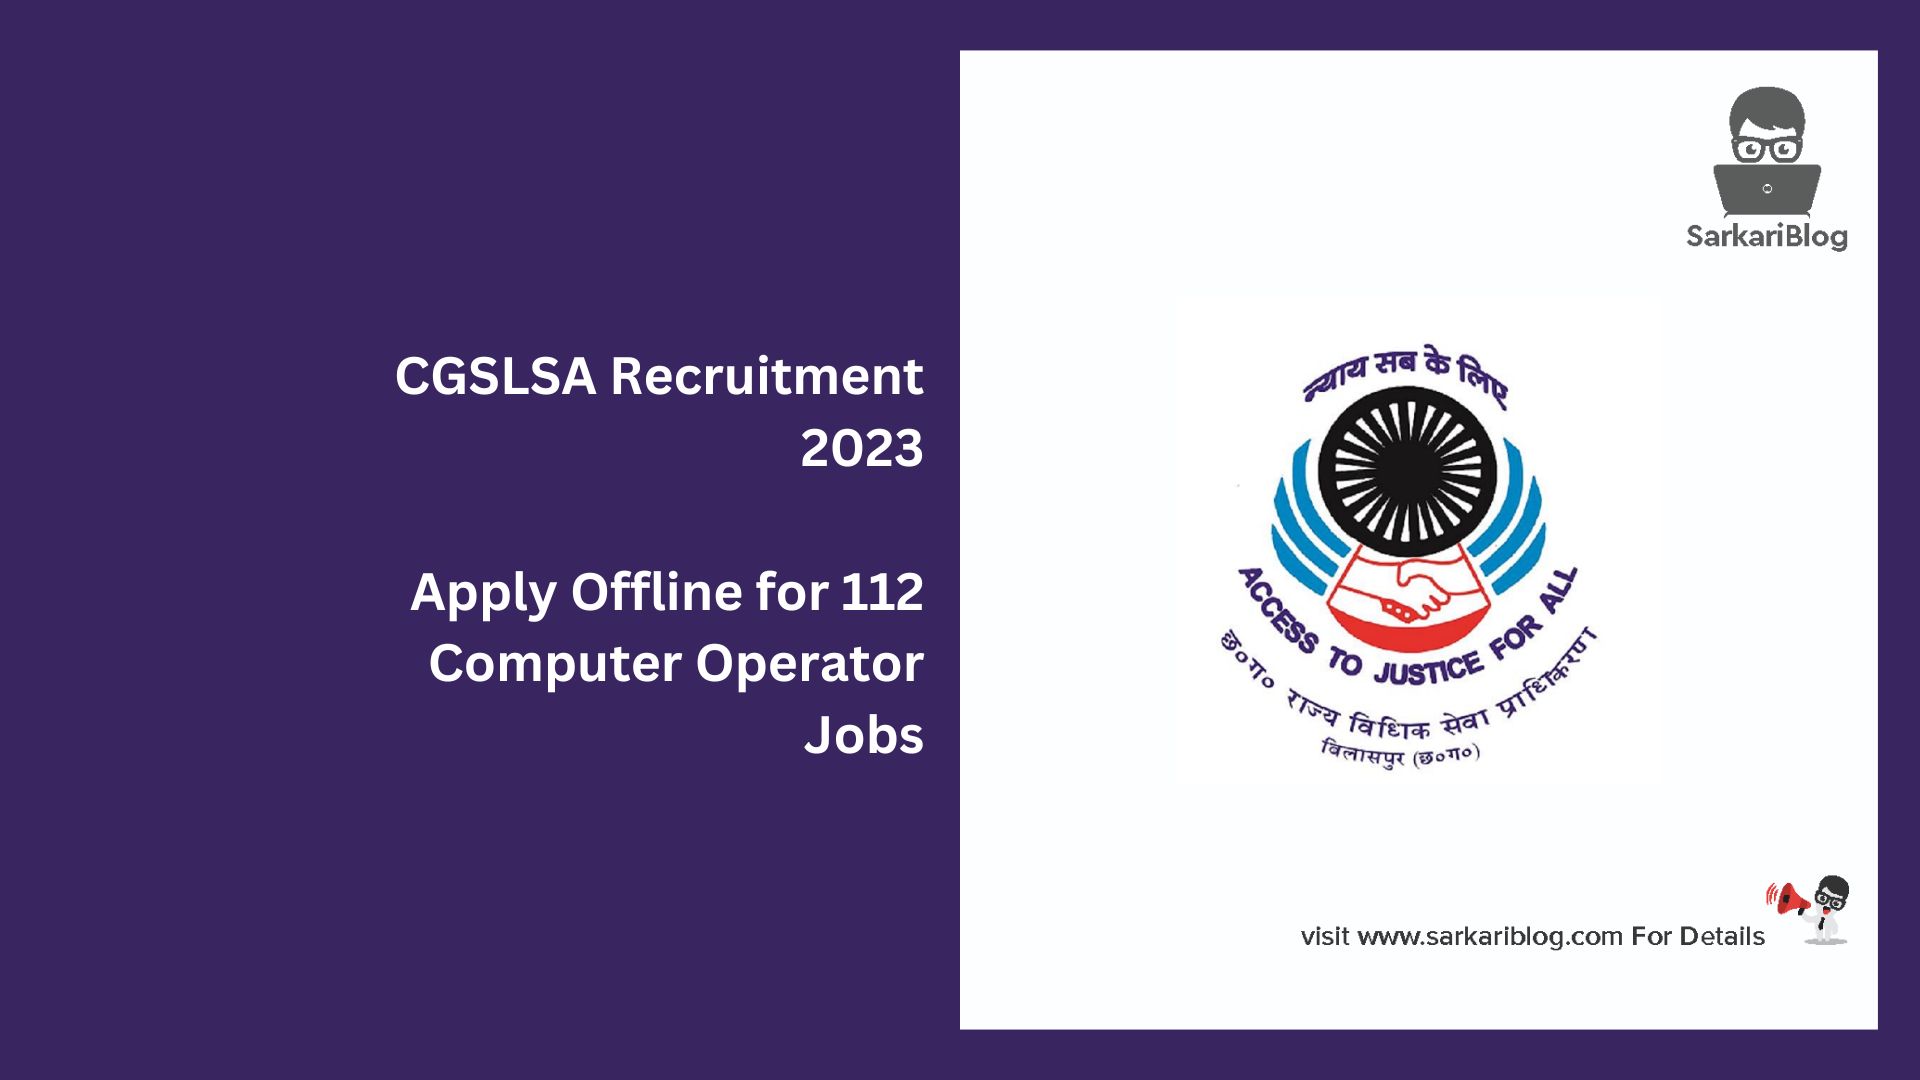 CGSLSA Recruitment 2023